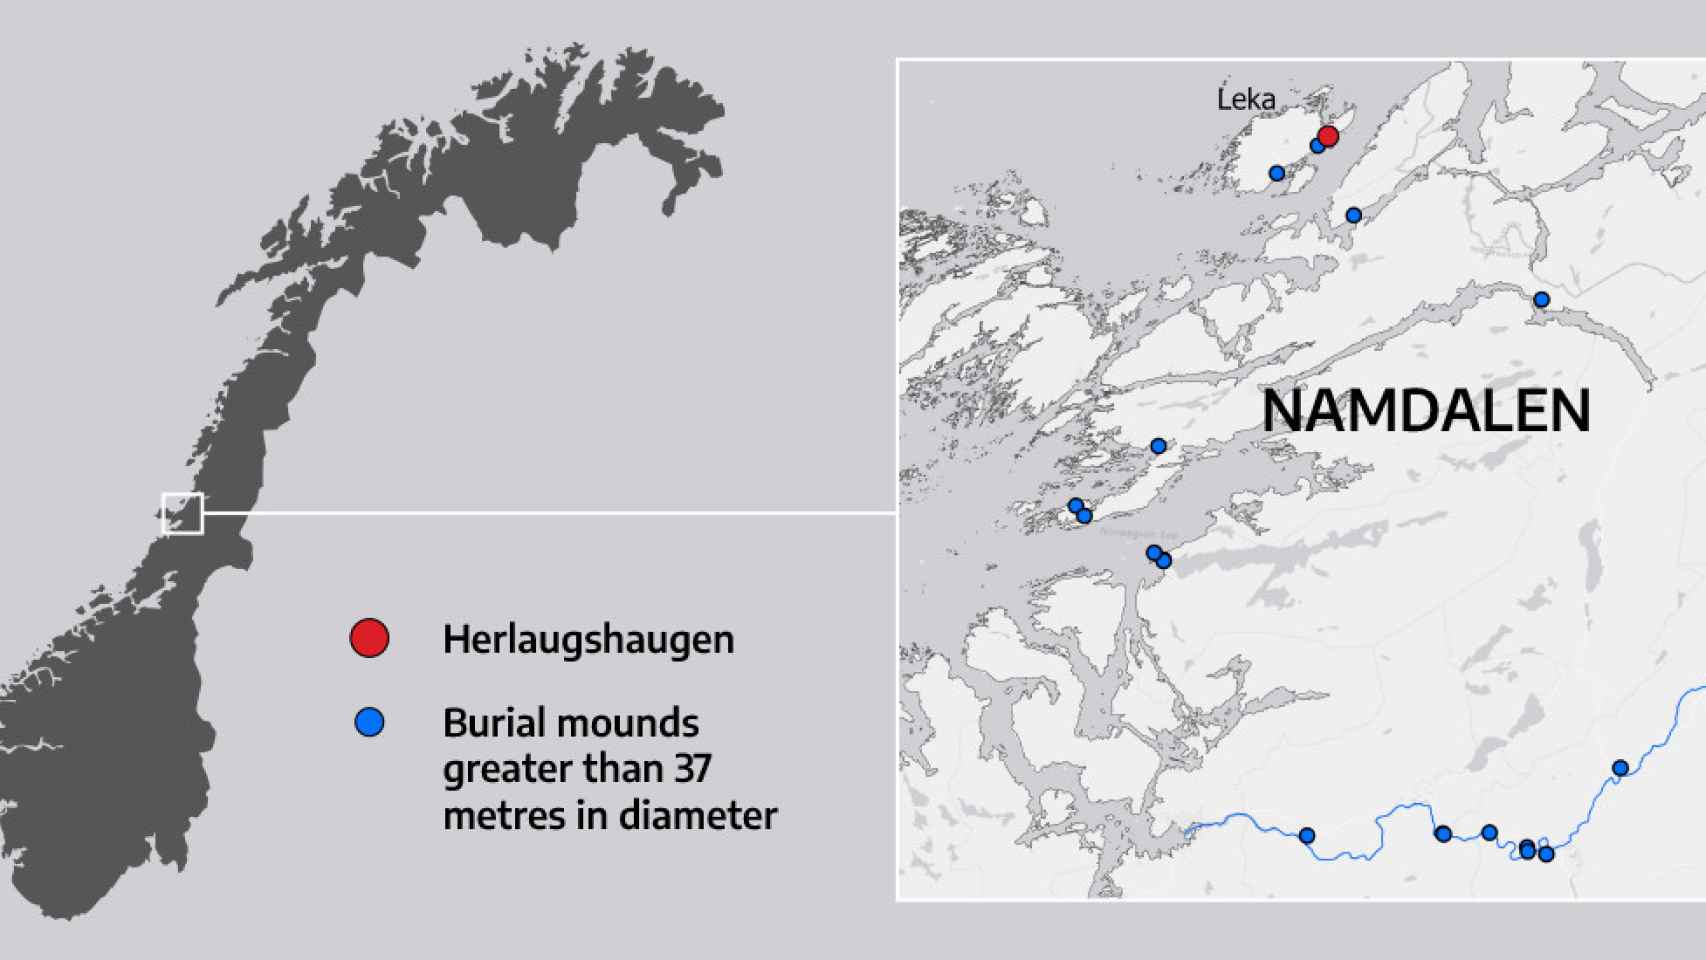 Mapa que ubica el túmulo de Herlaugshaugen y resto de grandes túmulos en el centro de Noruega